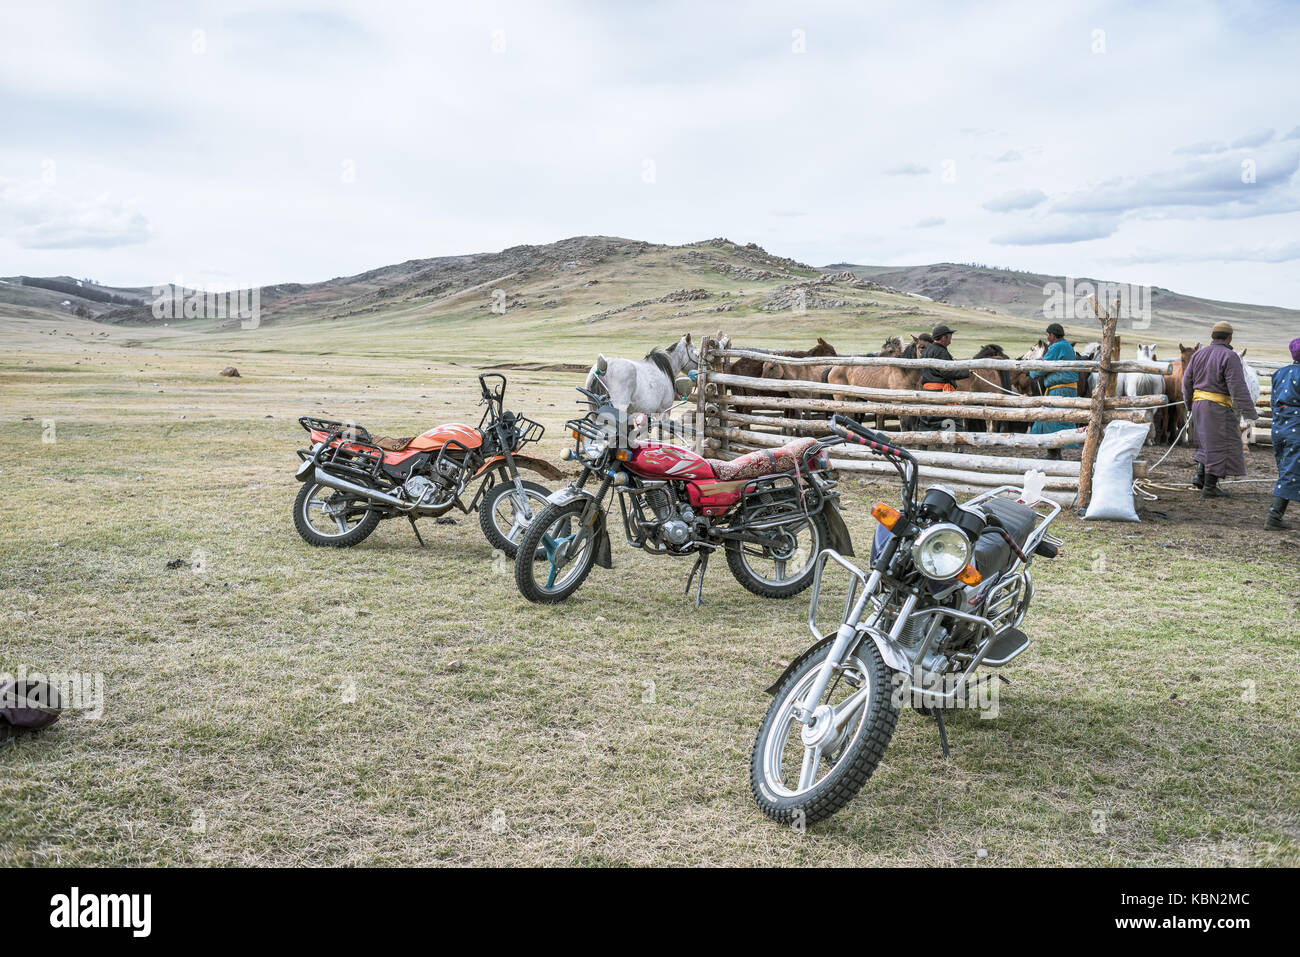 Mongolie - 22 mai 2017 : les motos debout près de corral avec les chevaux dans la prairie à jour nuageux Banque D'Images